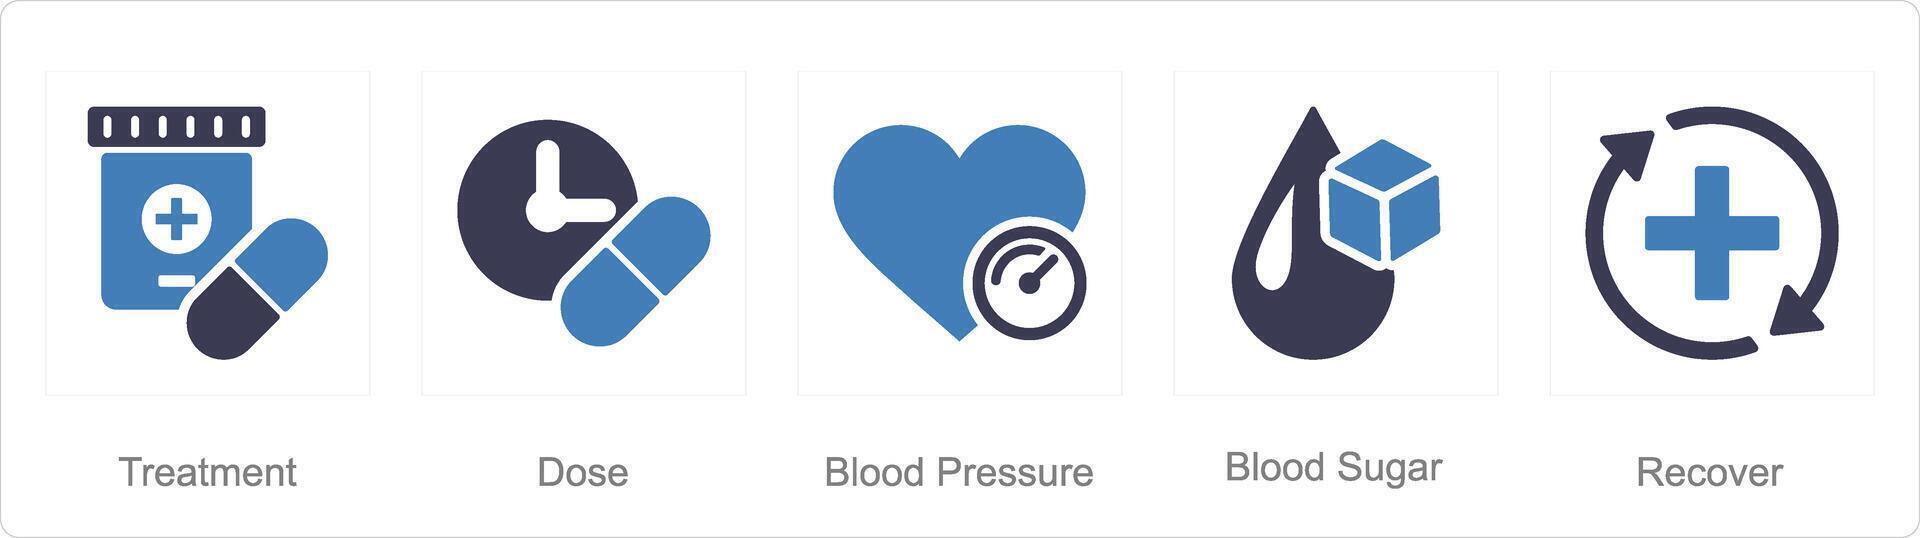 en uppsättning av 5 hälsa kolla upp ikoner som behandling, dos, blod tryck vektor